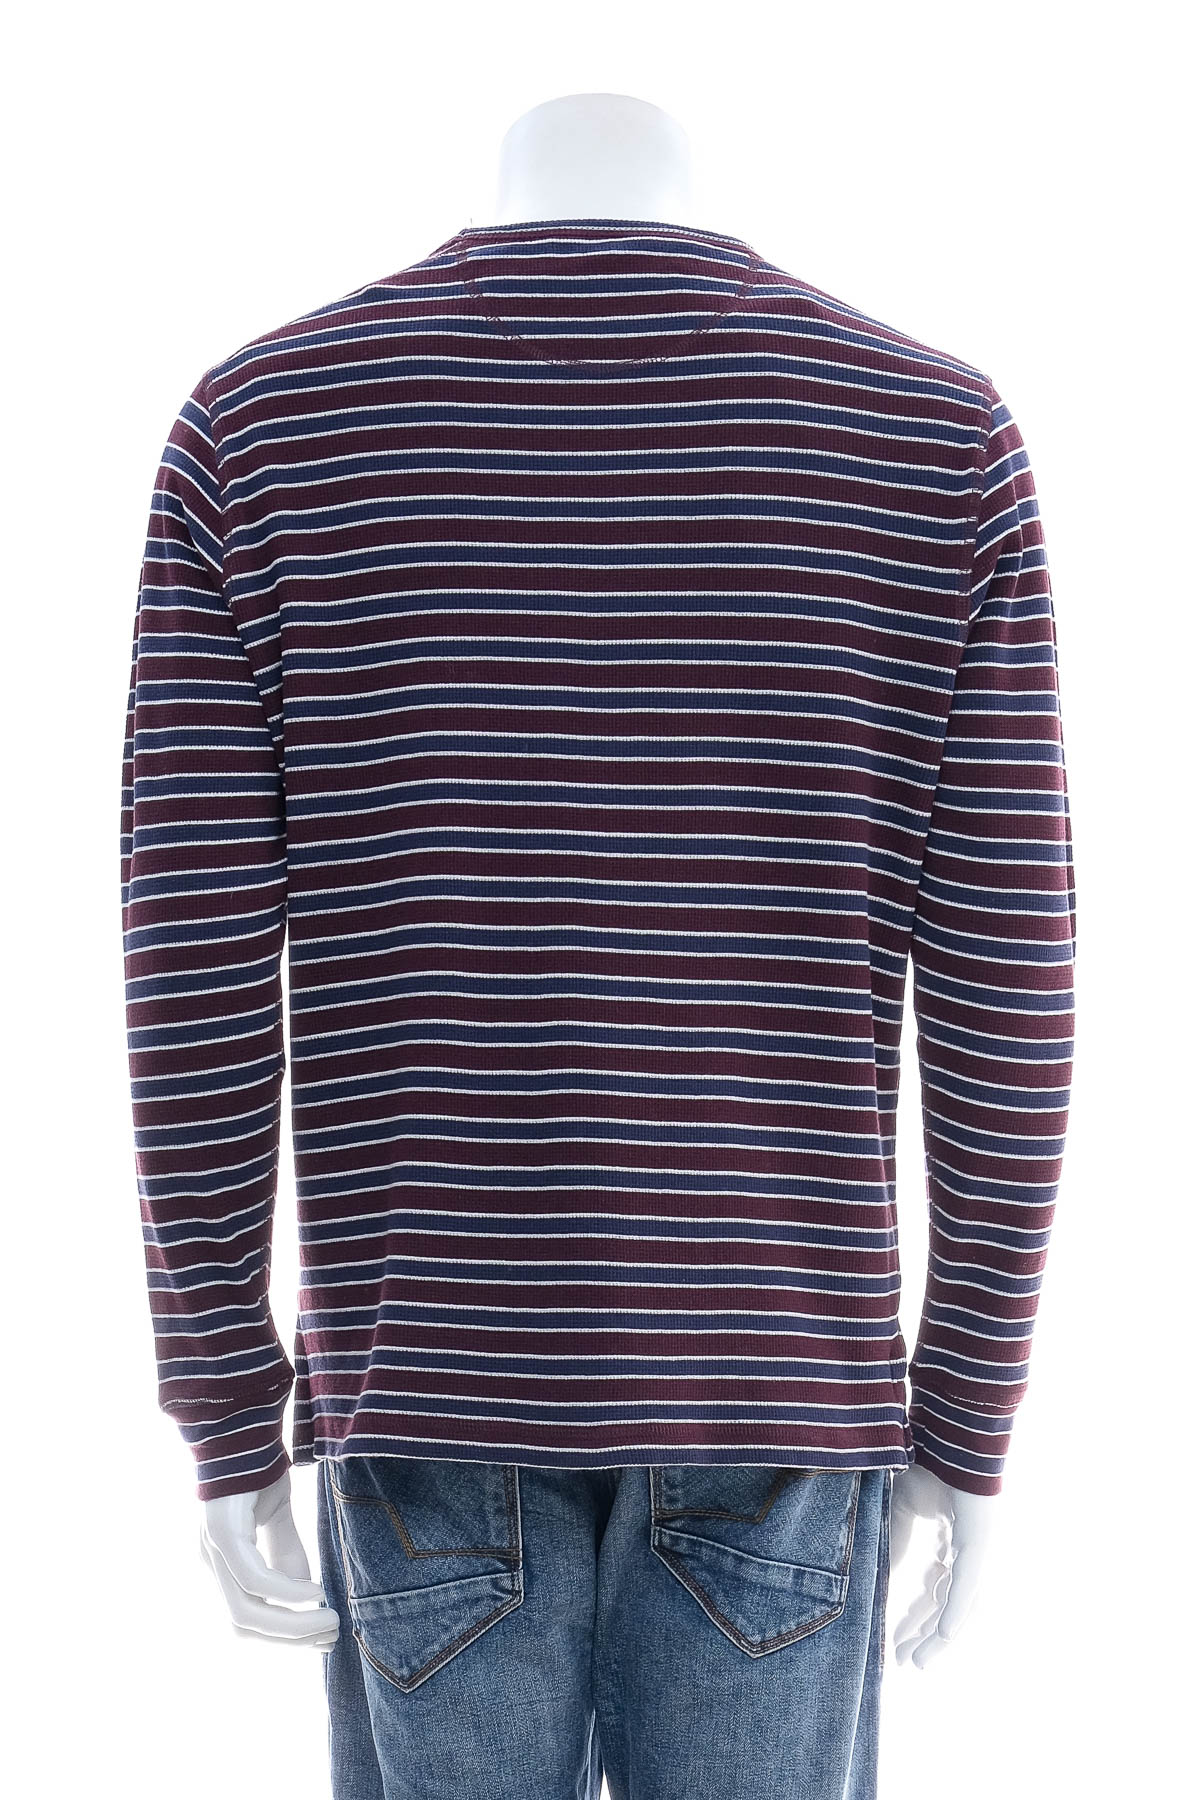 Men's sweater - U.S. Polo ASSN. - 1